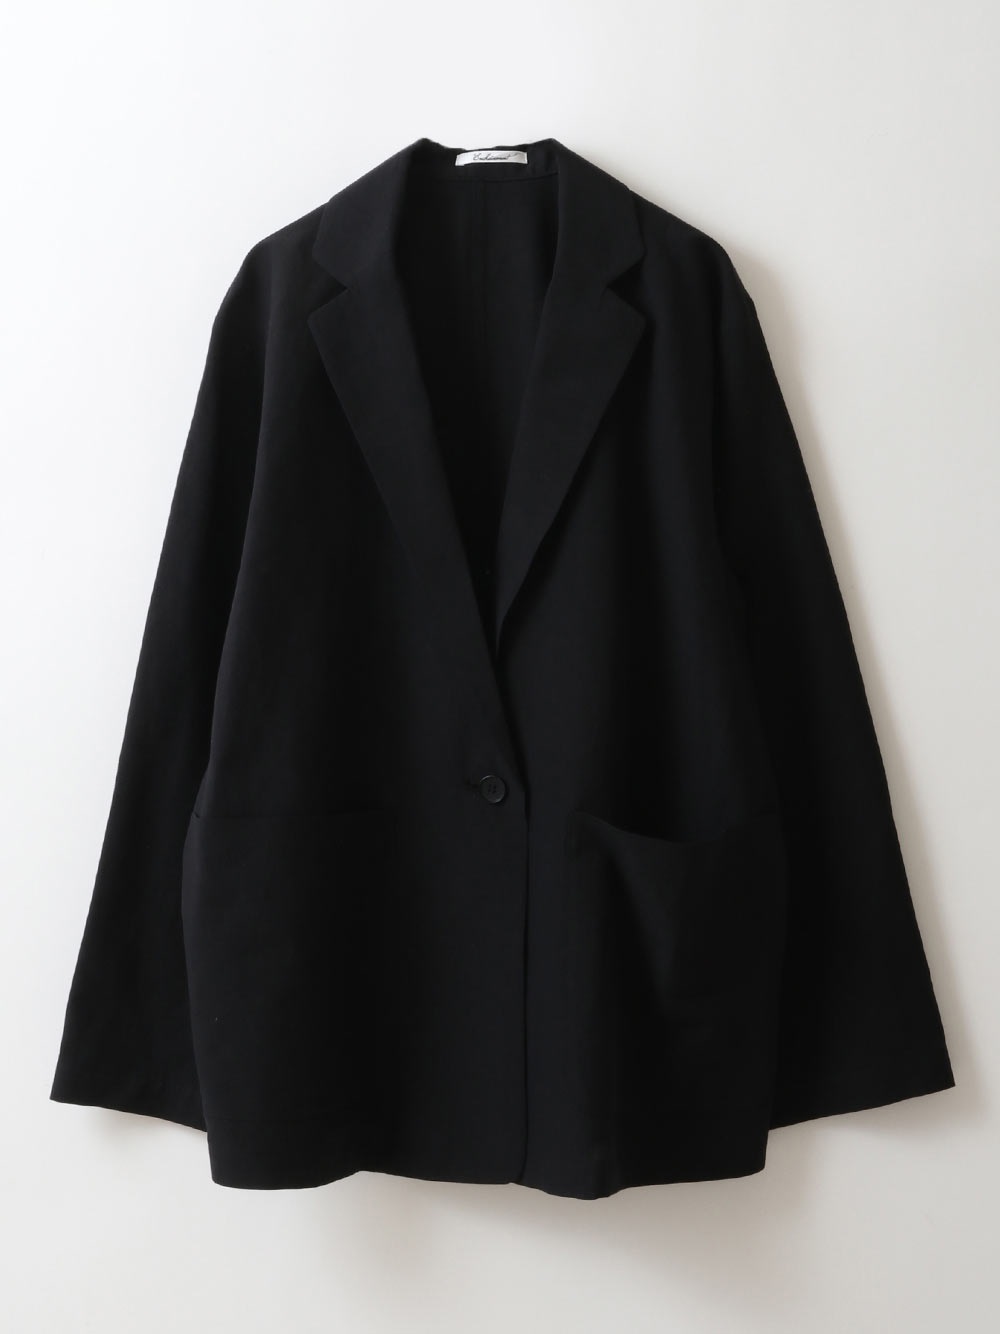 Silk Linen Tailored Jacket(00ブラック-フリー)